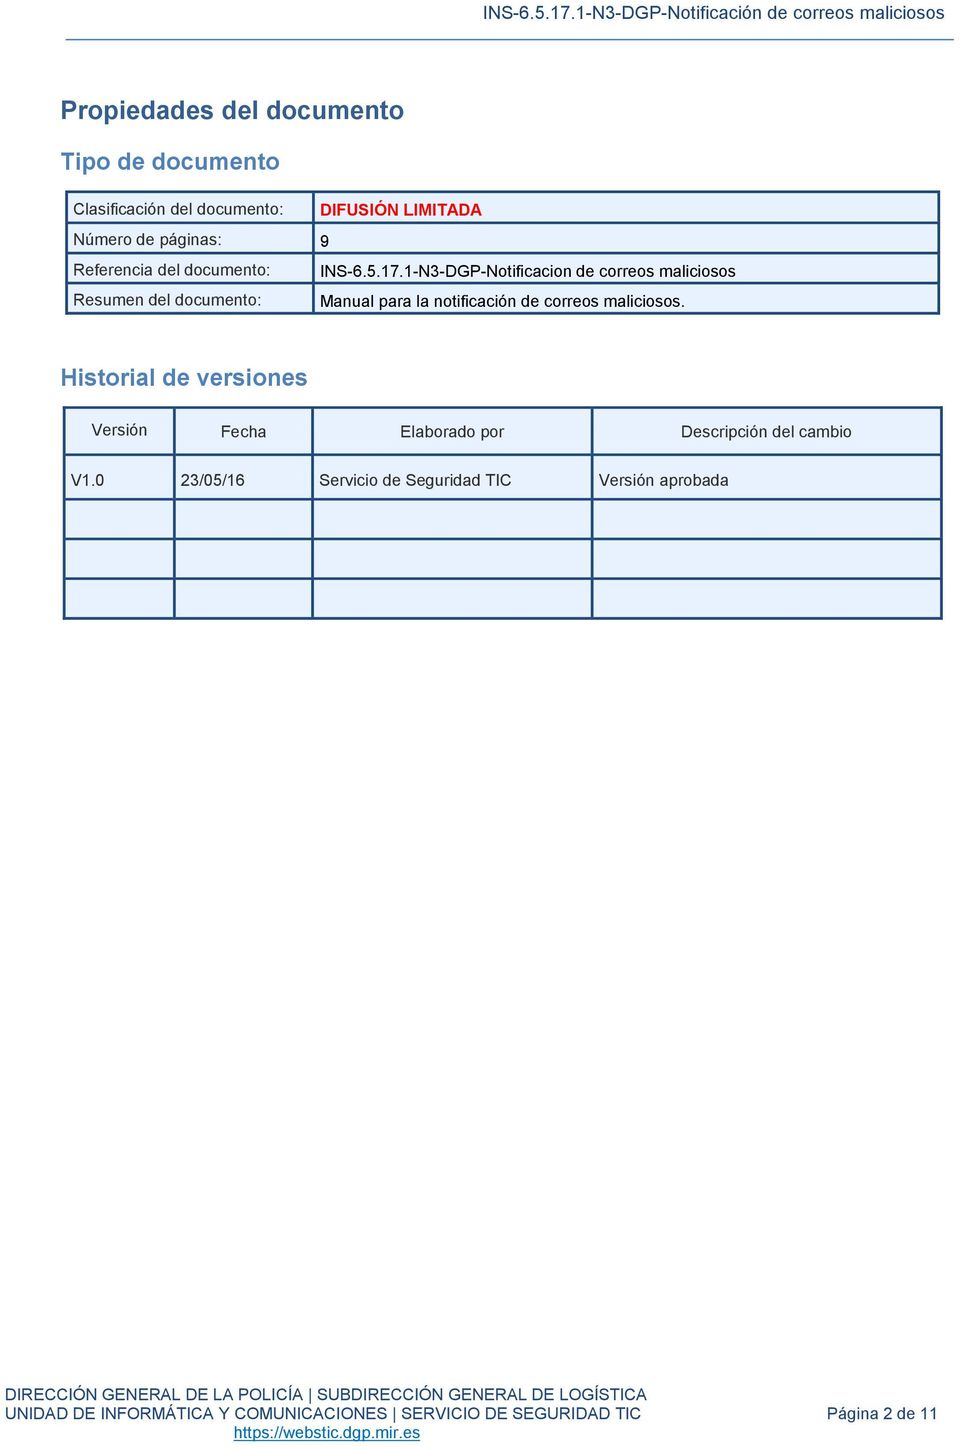 1-N3-DGP-Notificacion de correos maliciosos Resumen del documento: Manual para la notificación de